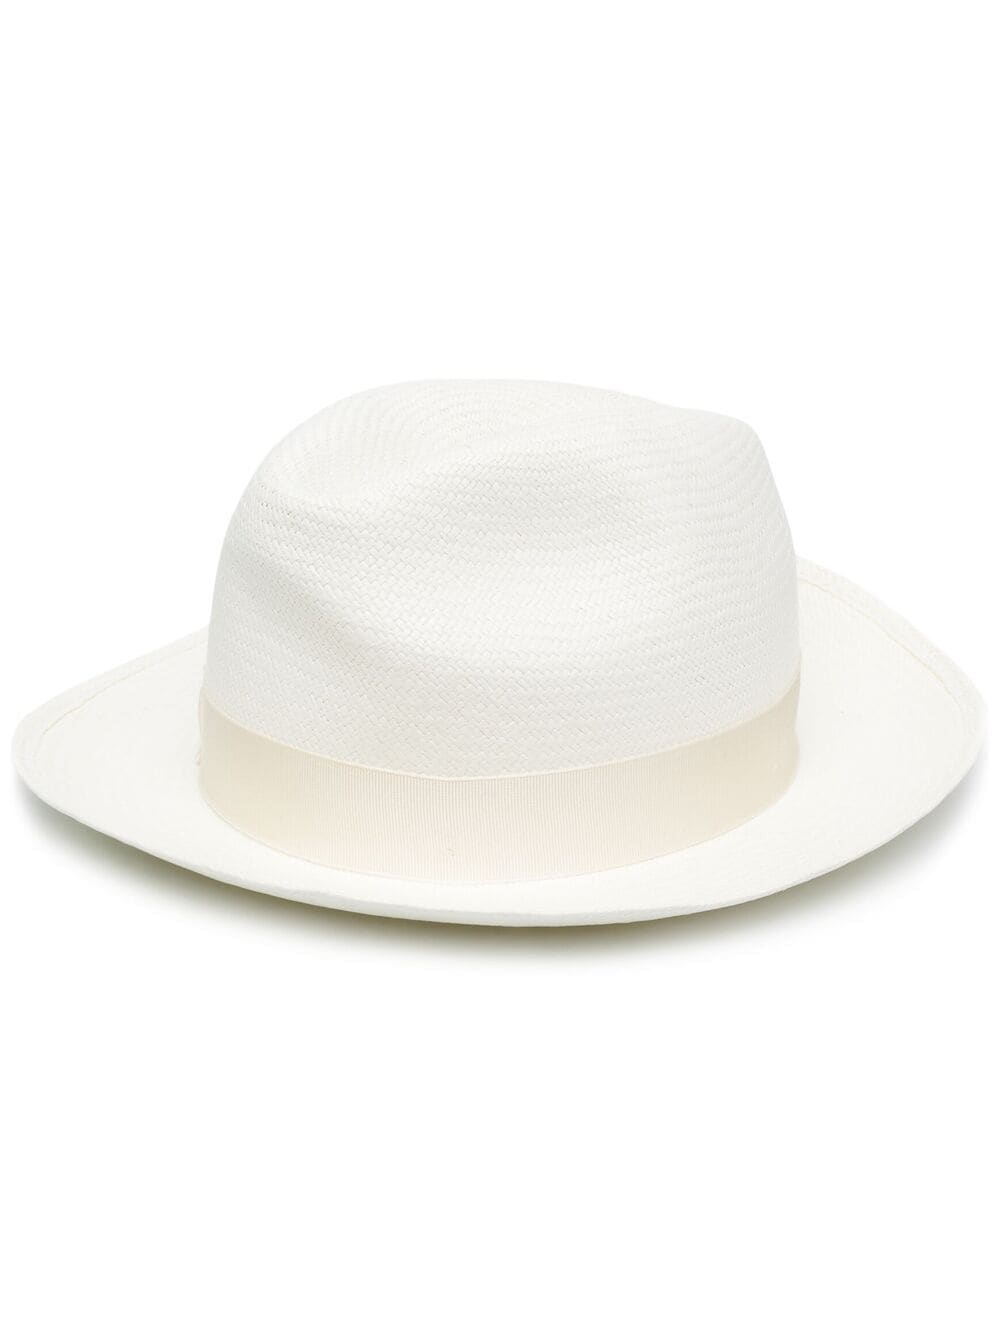 Borsalino BORSALINO- Monica Straw Panama Hat